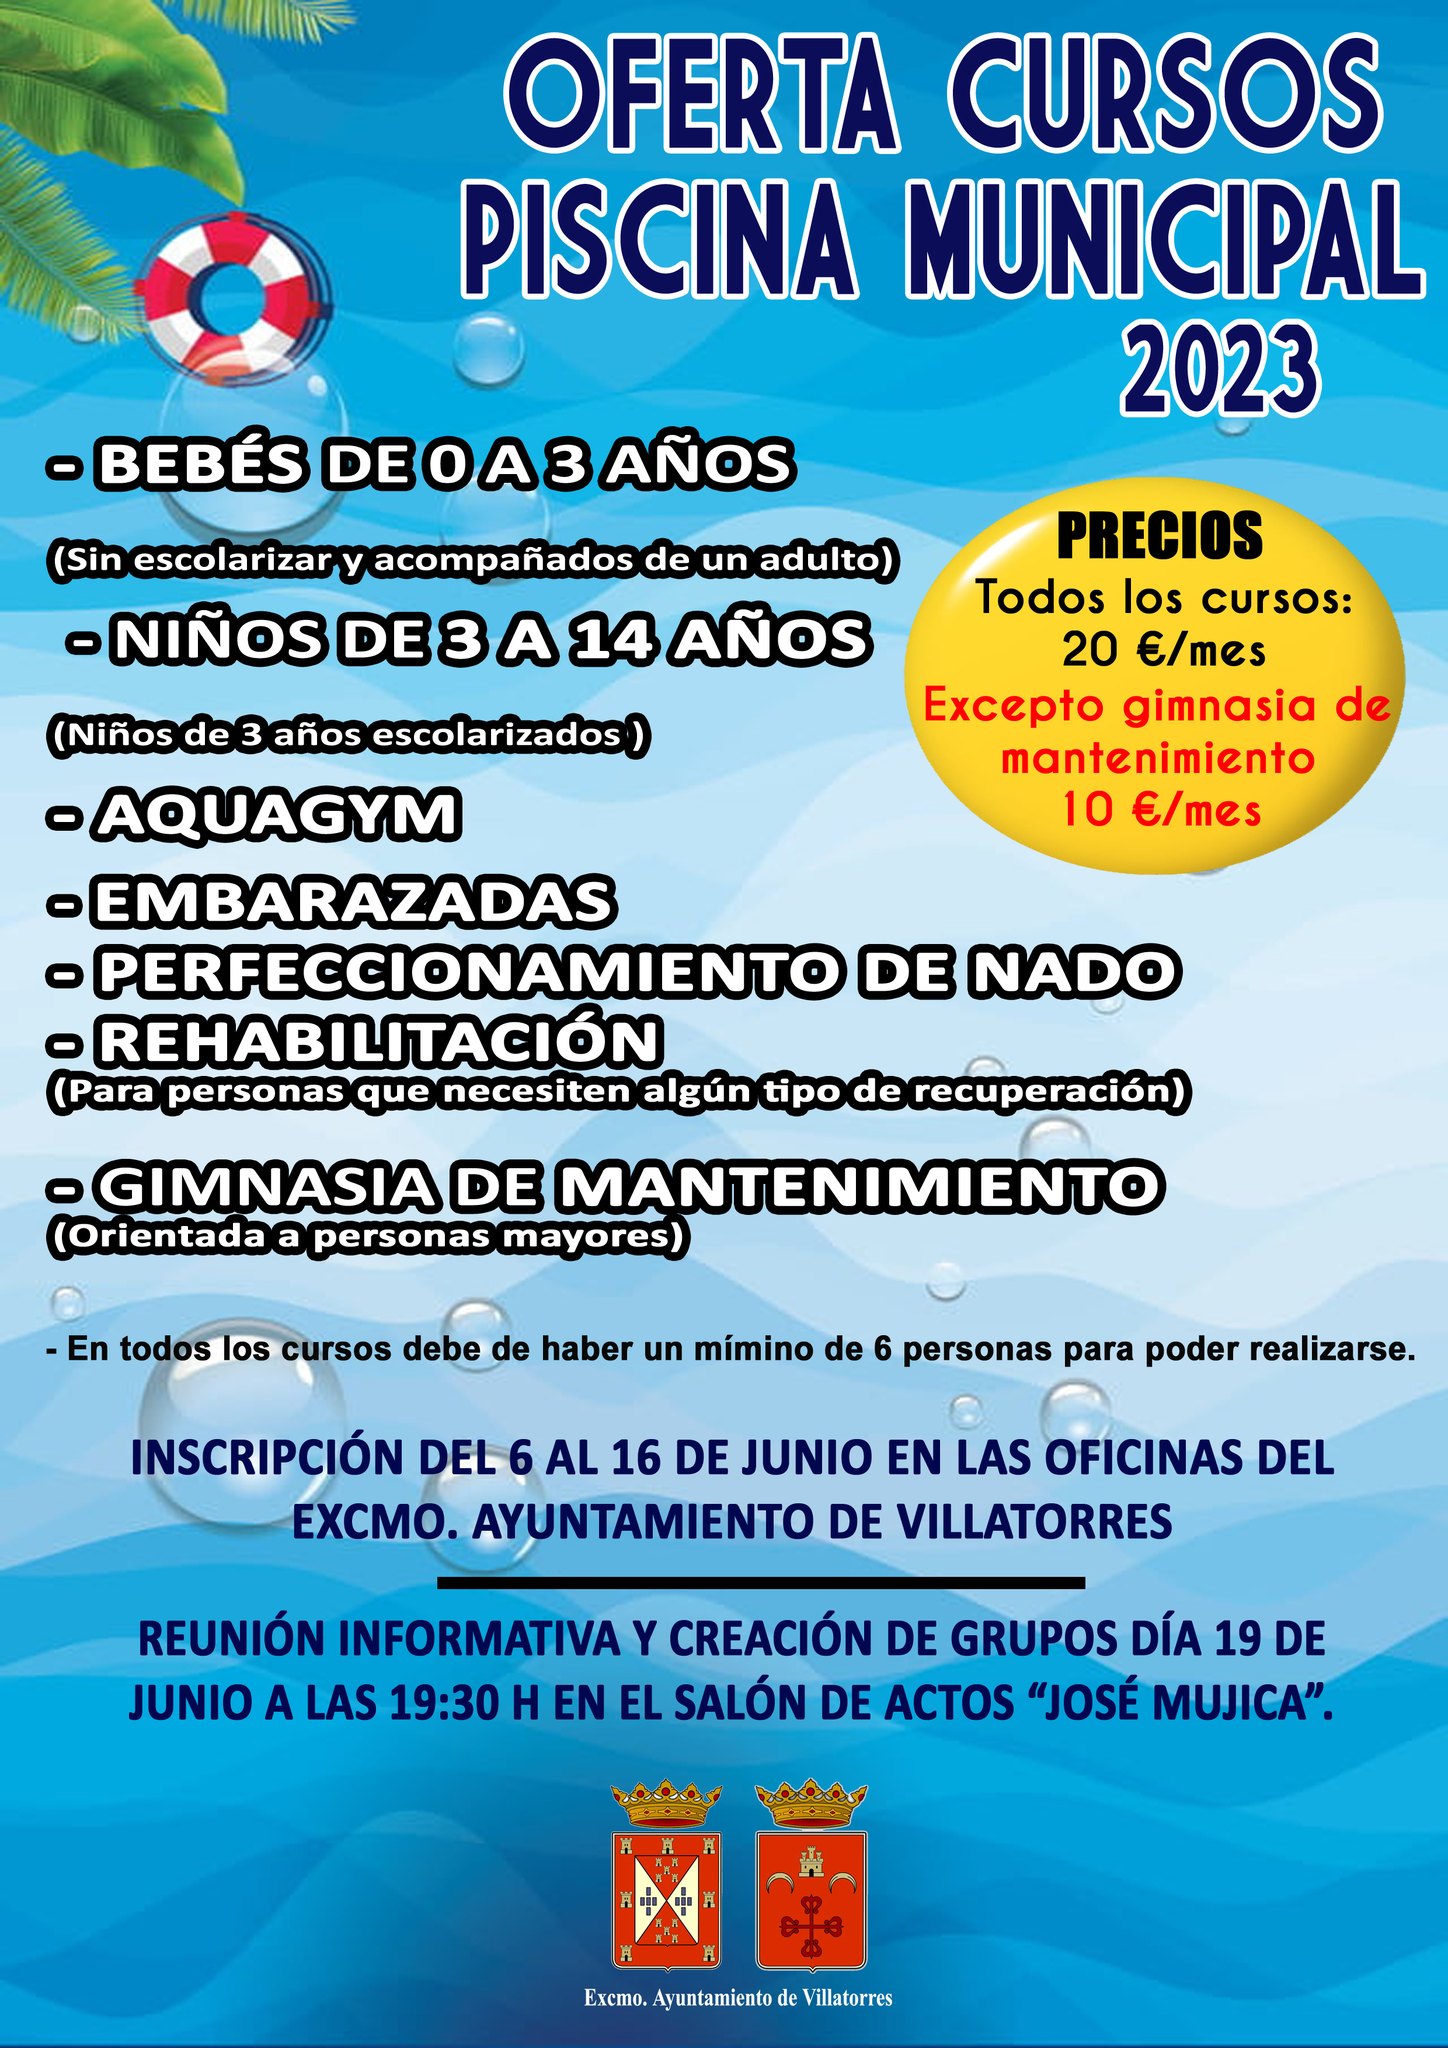 Oferta Cursos Piscina Municipal 2023